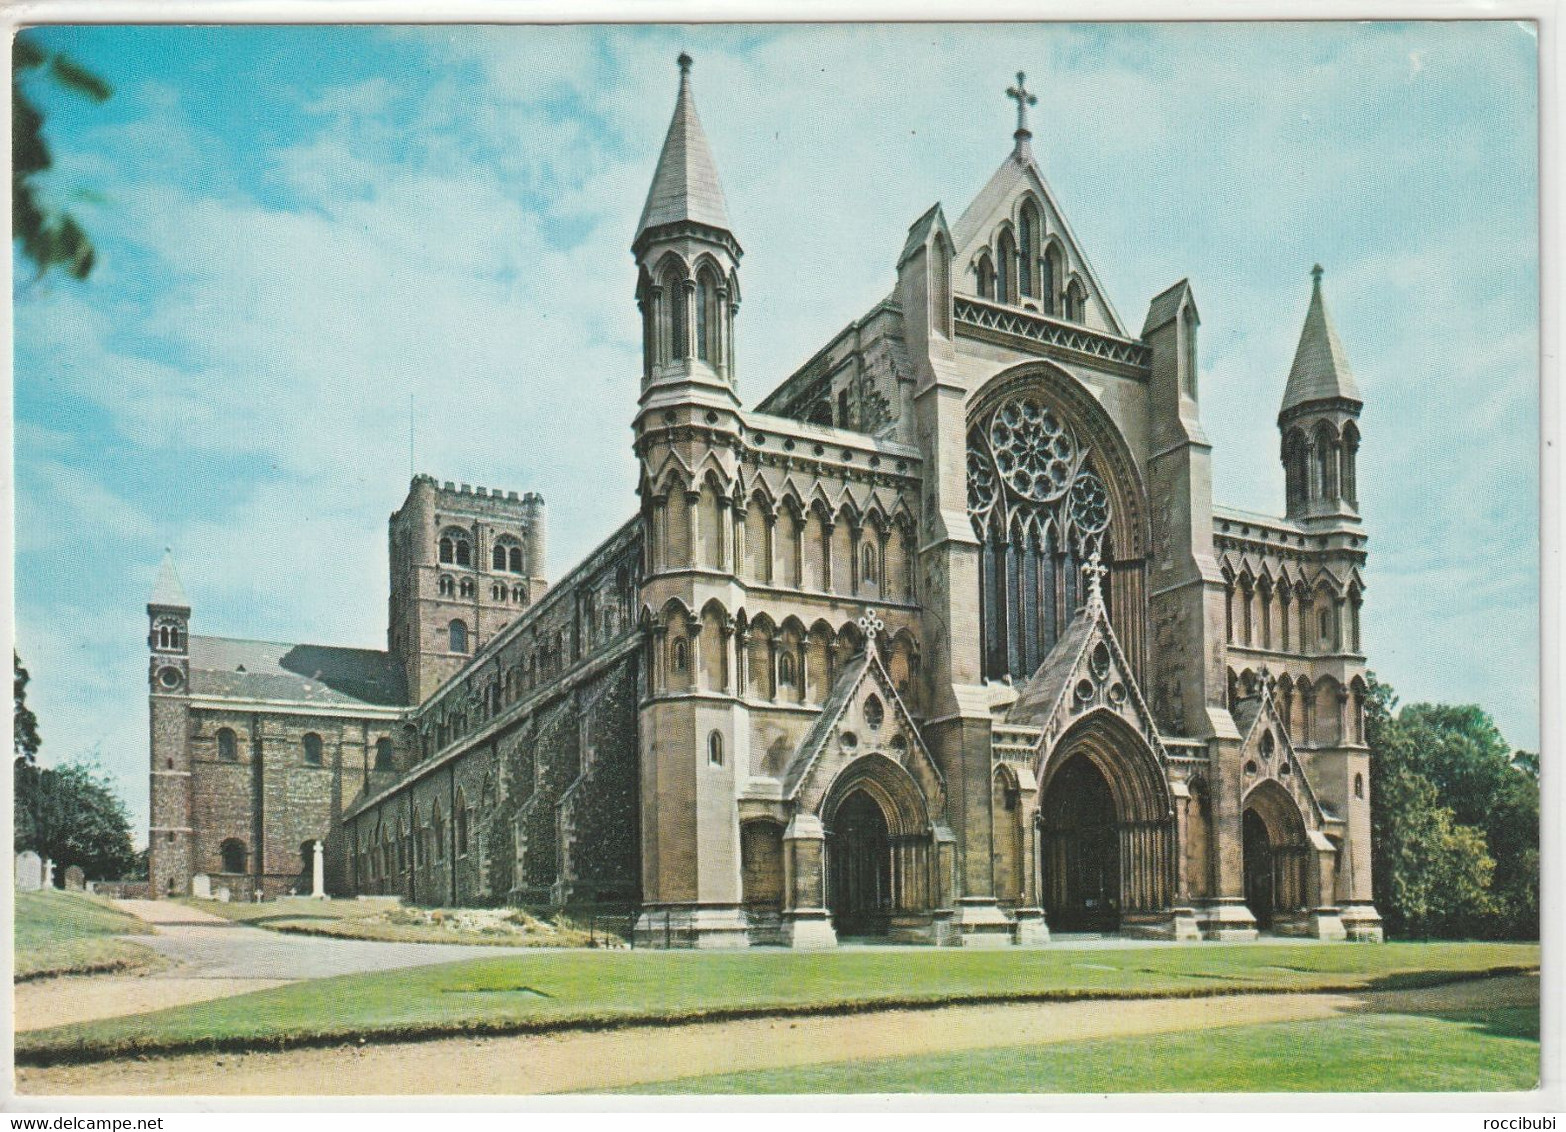 St. Albans Abbey - Hertfordshire